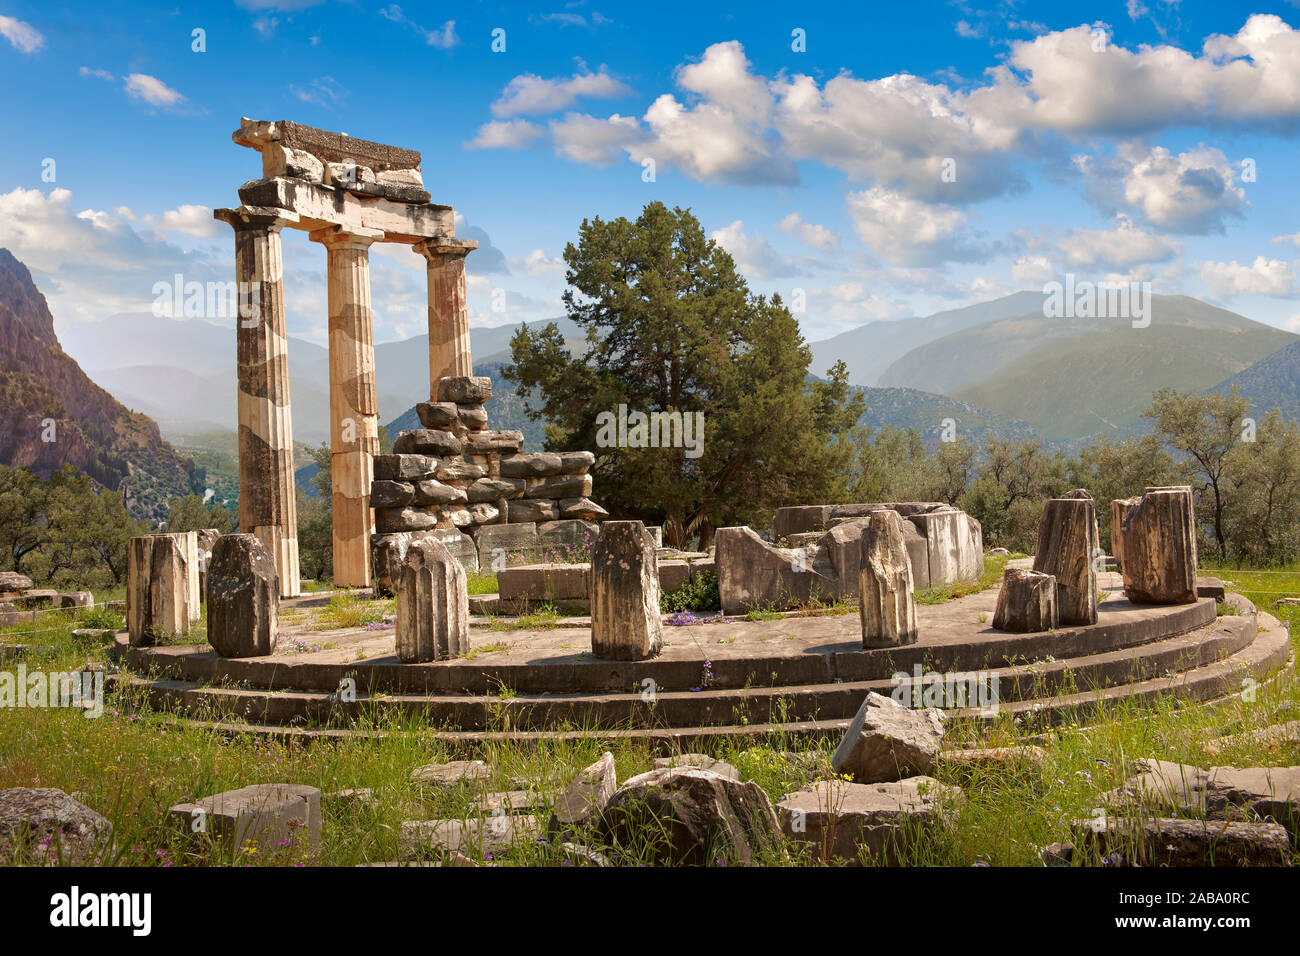 La Tholos Delphi circulaire temple avec des colonnes doriques, 380 BC, sanctuaire d'Athéna Pronaia, Site archéologique de Delphes, Grèce Banque D'Images